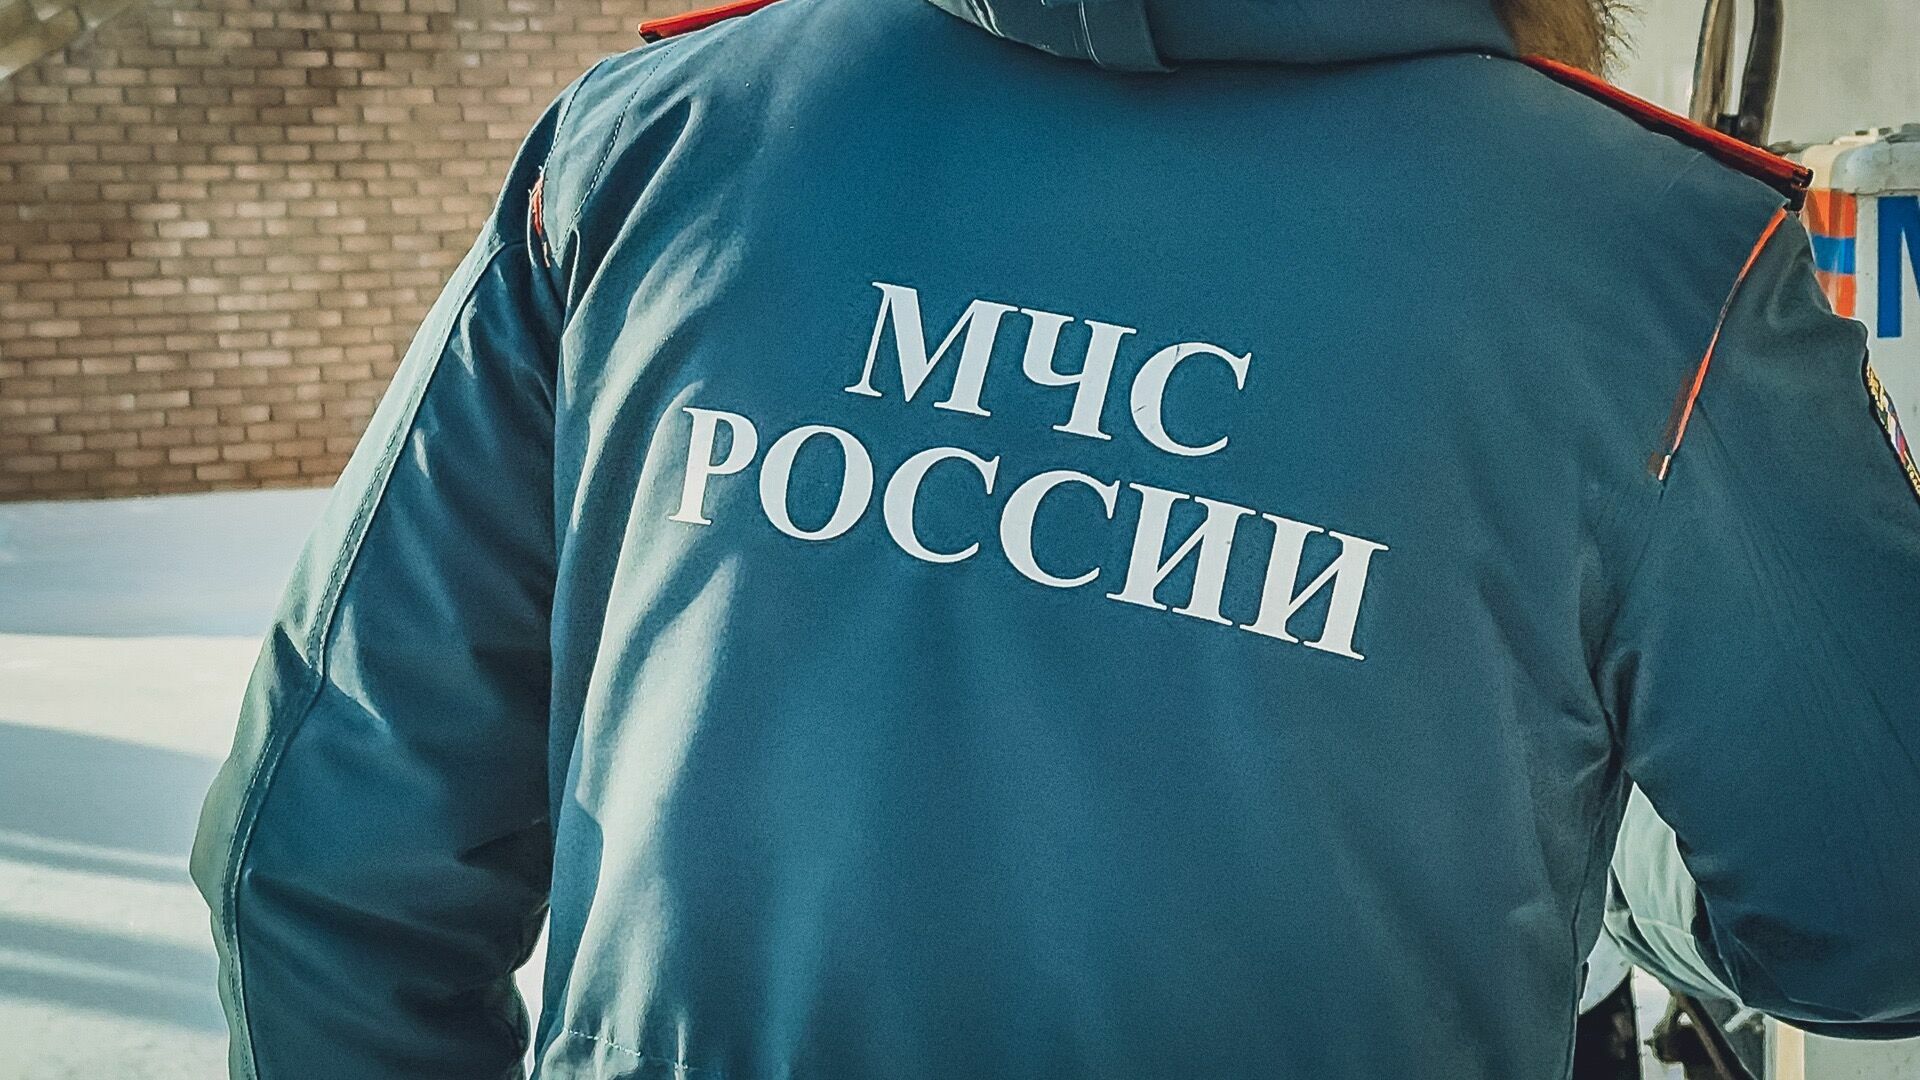 130 сотрудников МЧС готовятся к параду Победы в Нижнем Новгороде